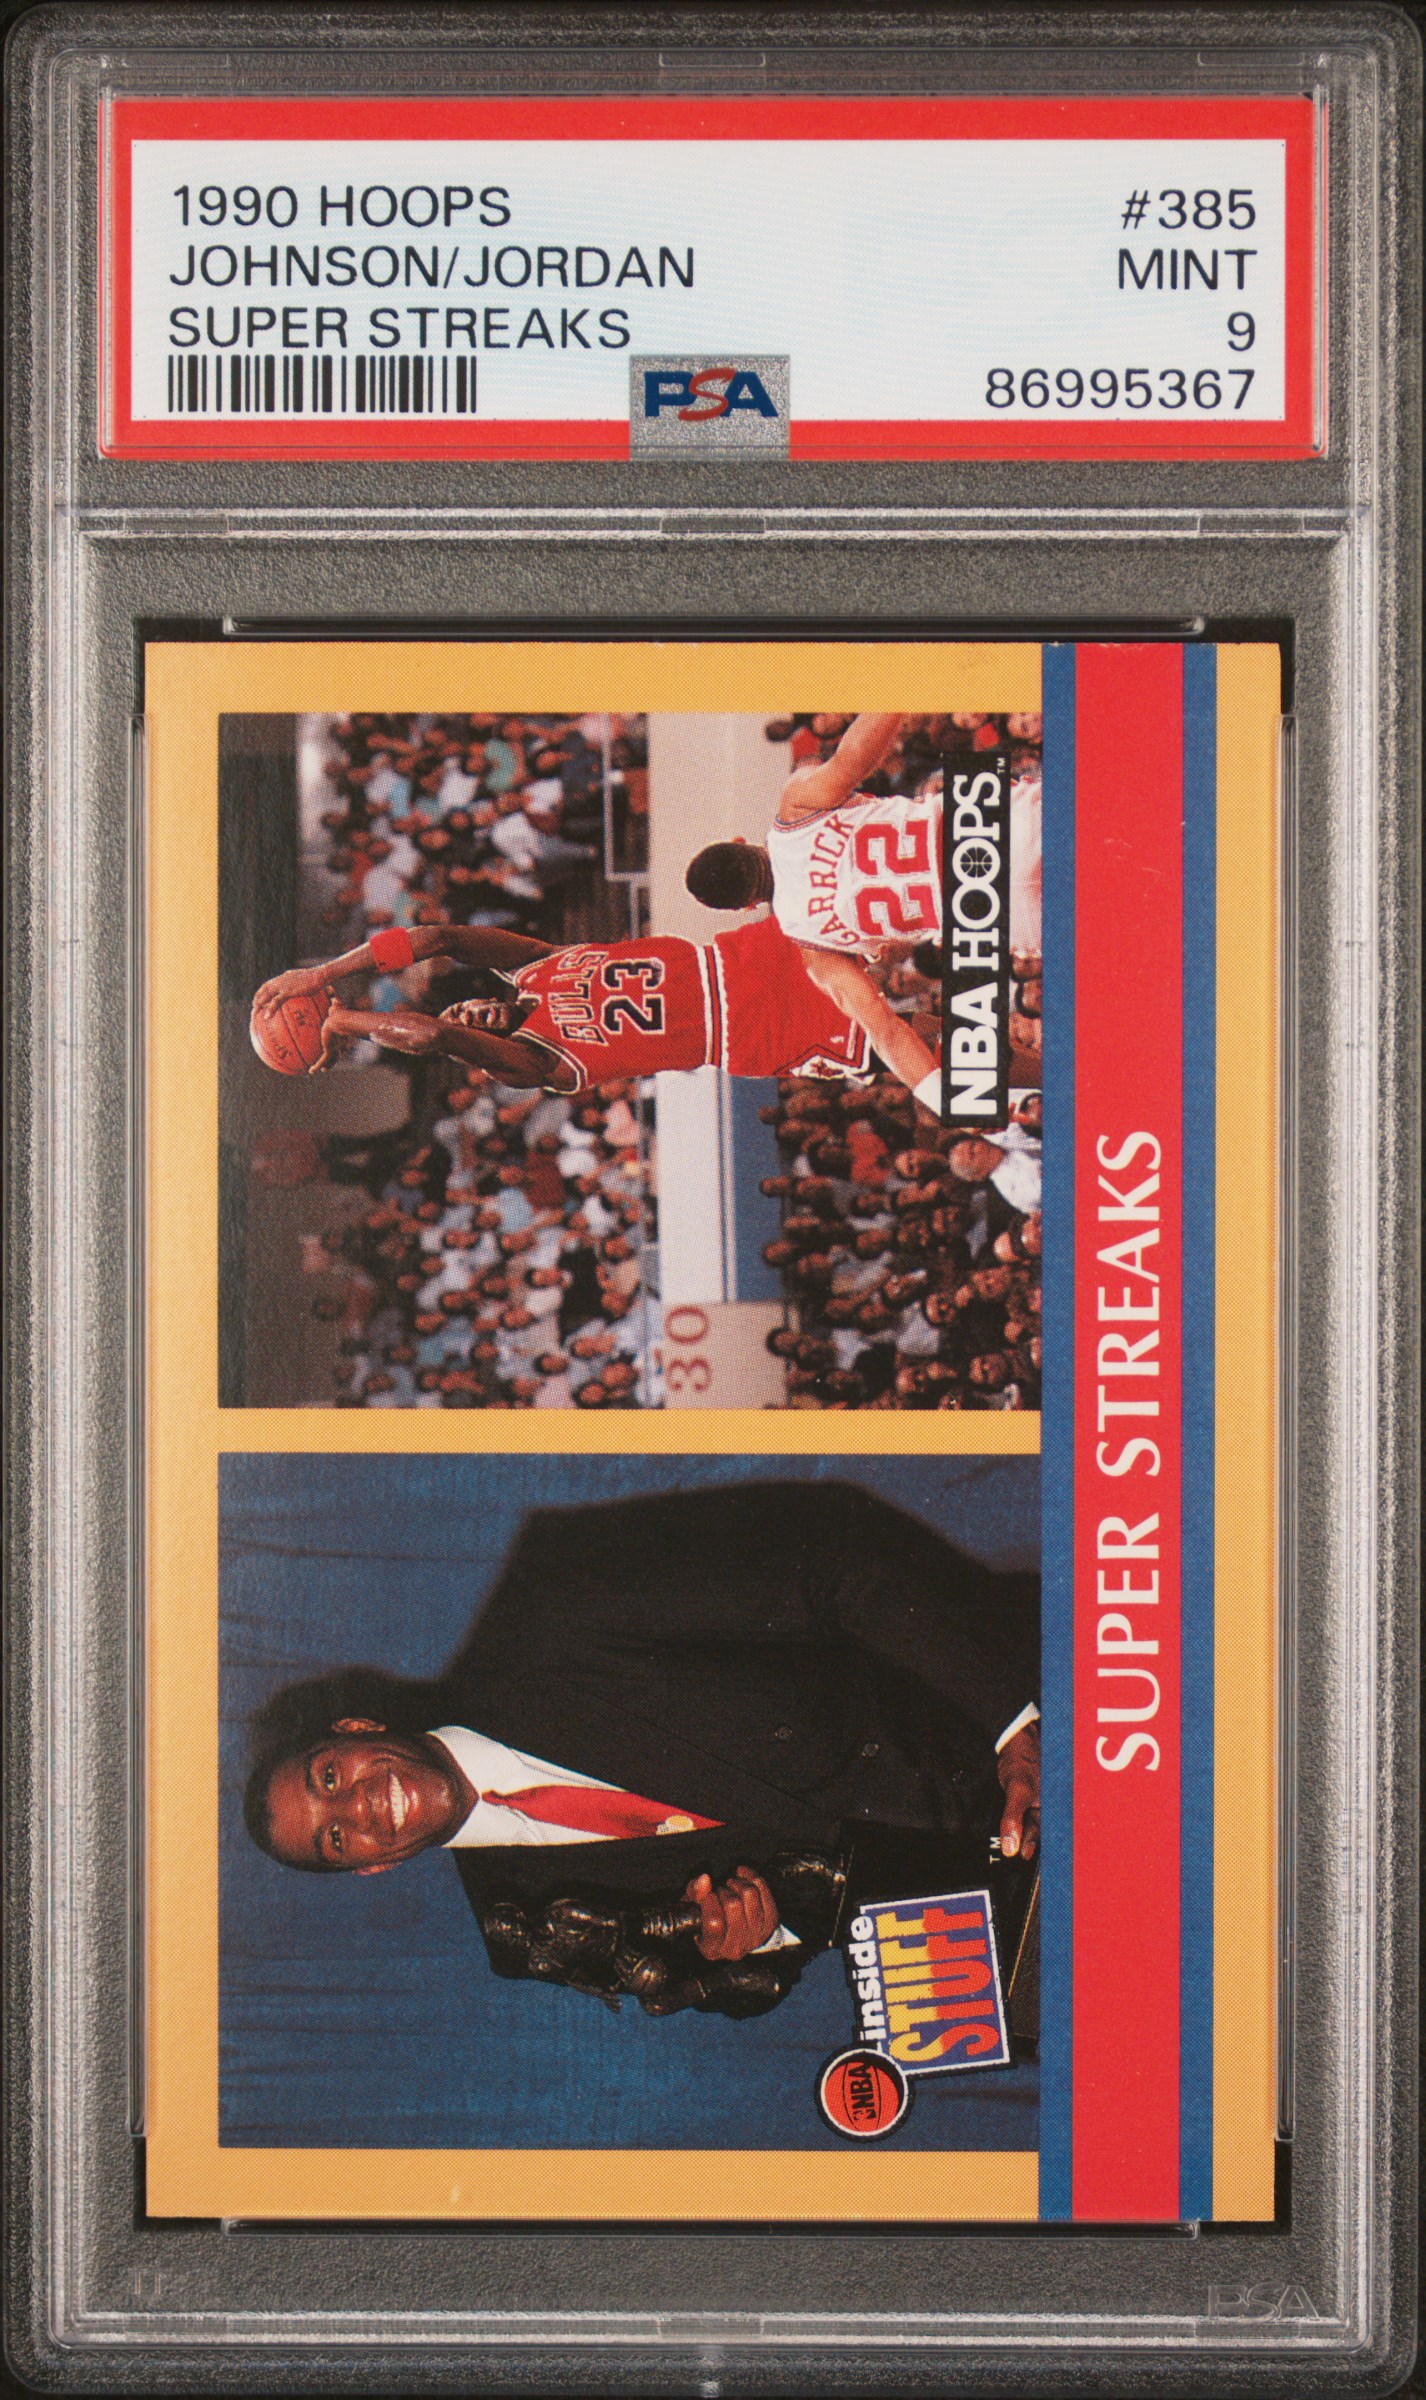 1990-91 Hoops Super Streaks #385 Magic Johnson/Michael Jordan – PSA MINT 9